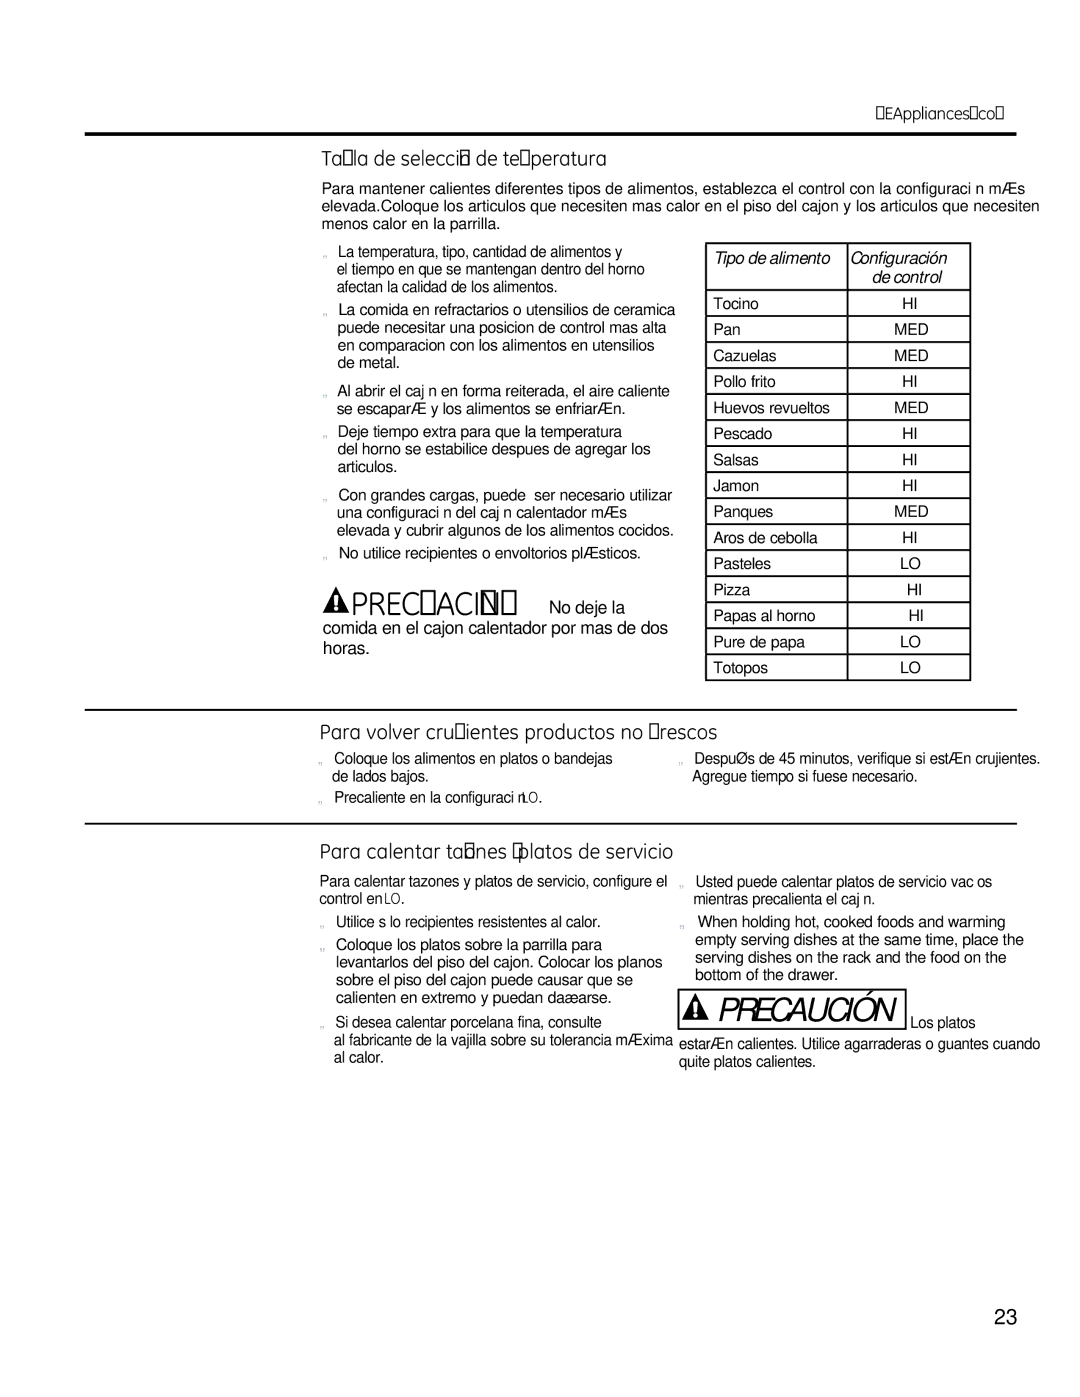 GE RB790, JBS56 manual Precuación No deje la, Tabla de selección de temperatura, Para volver crujientes productos no frescos 